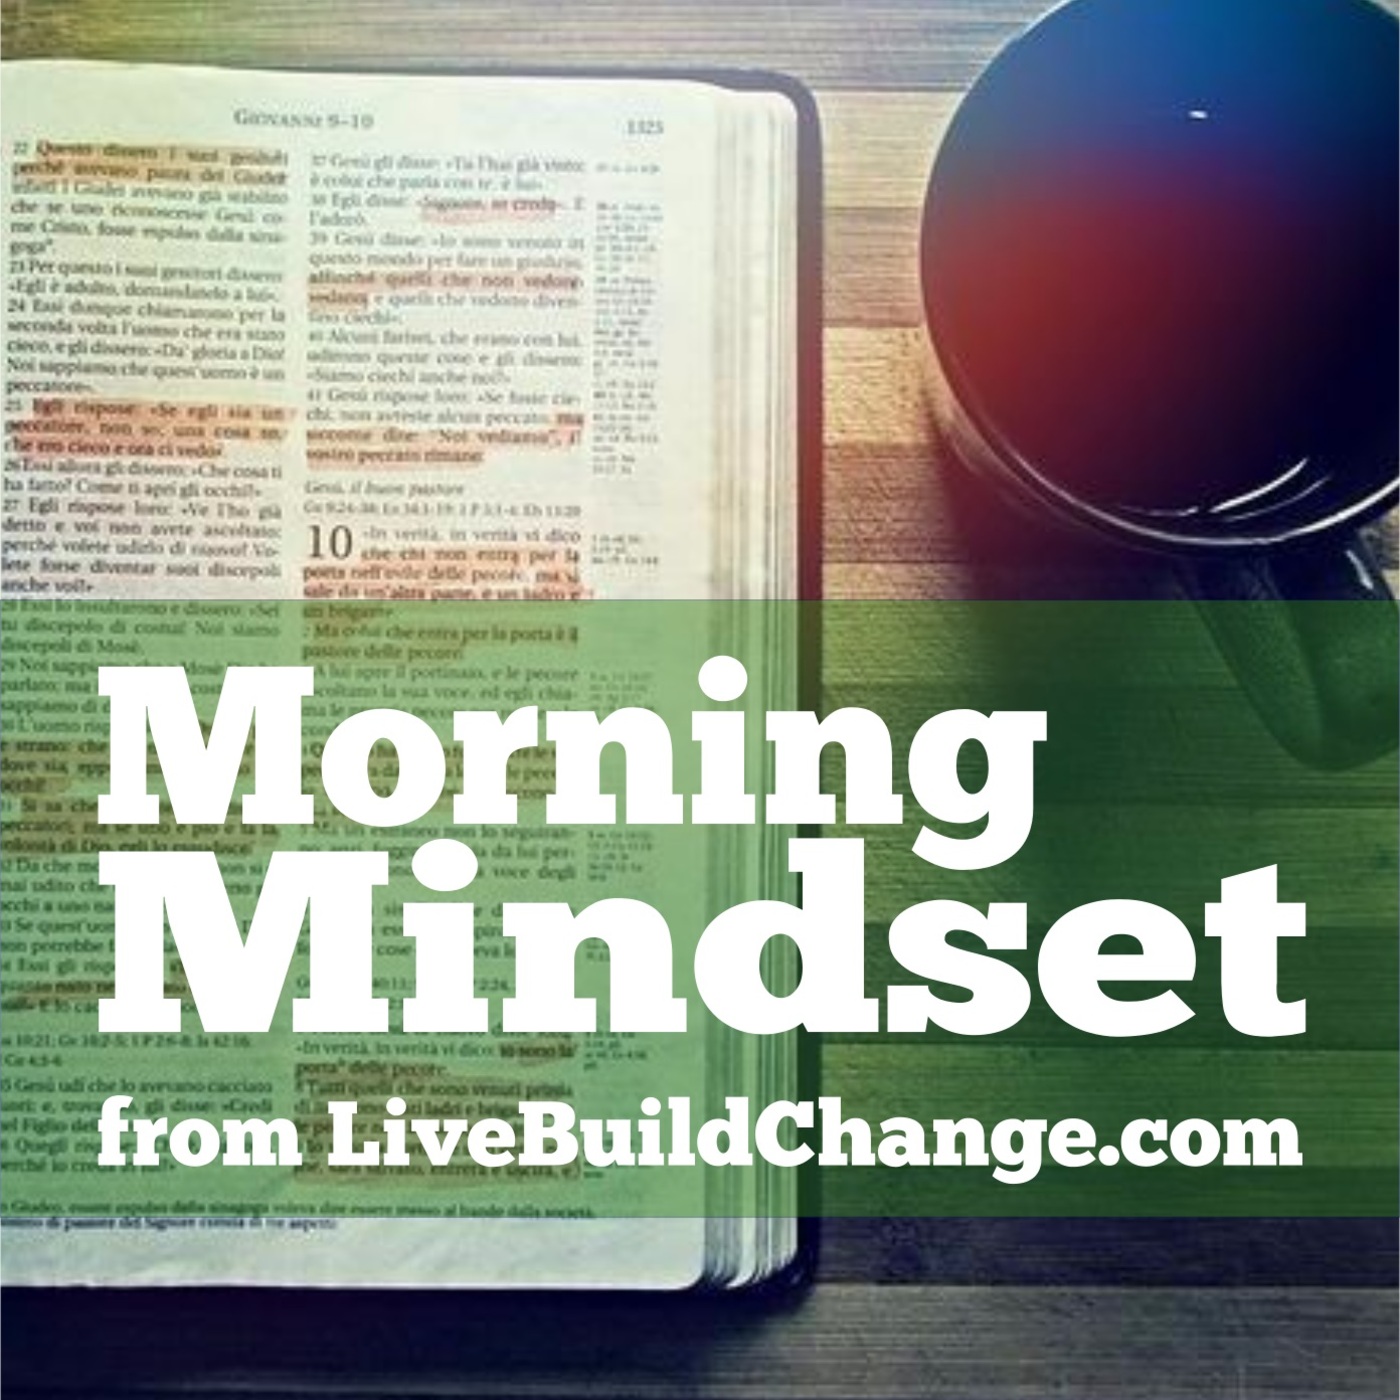 November 21 Morning Mindset from Live Build Change